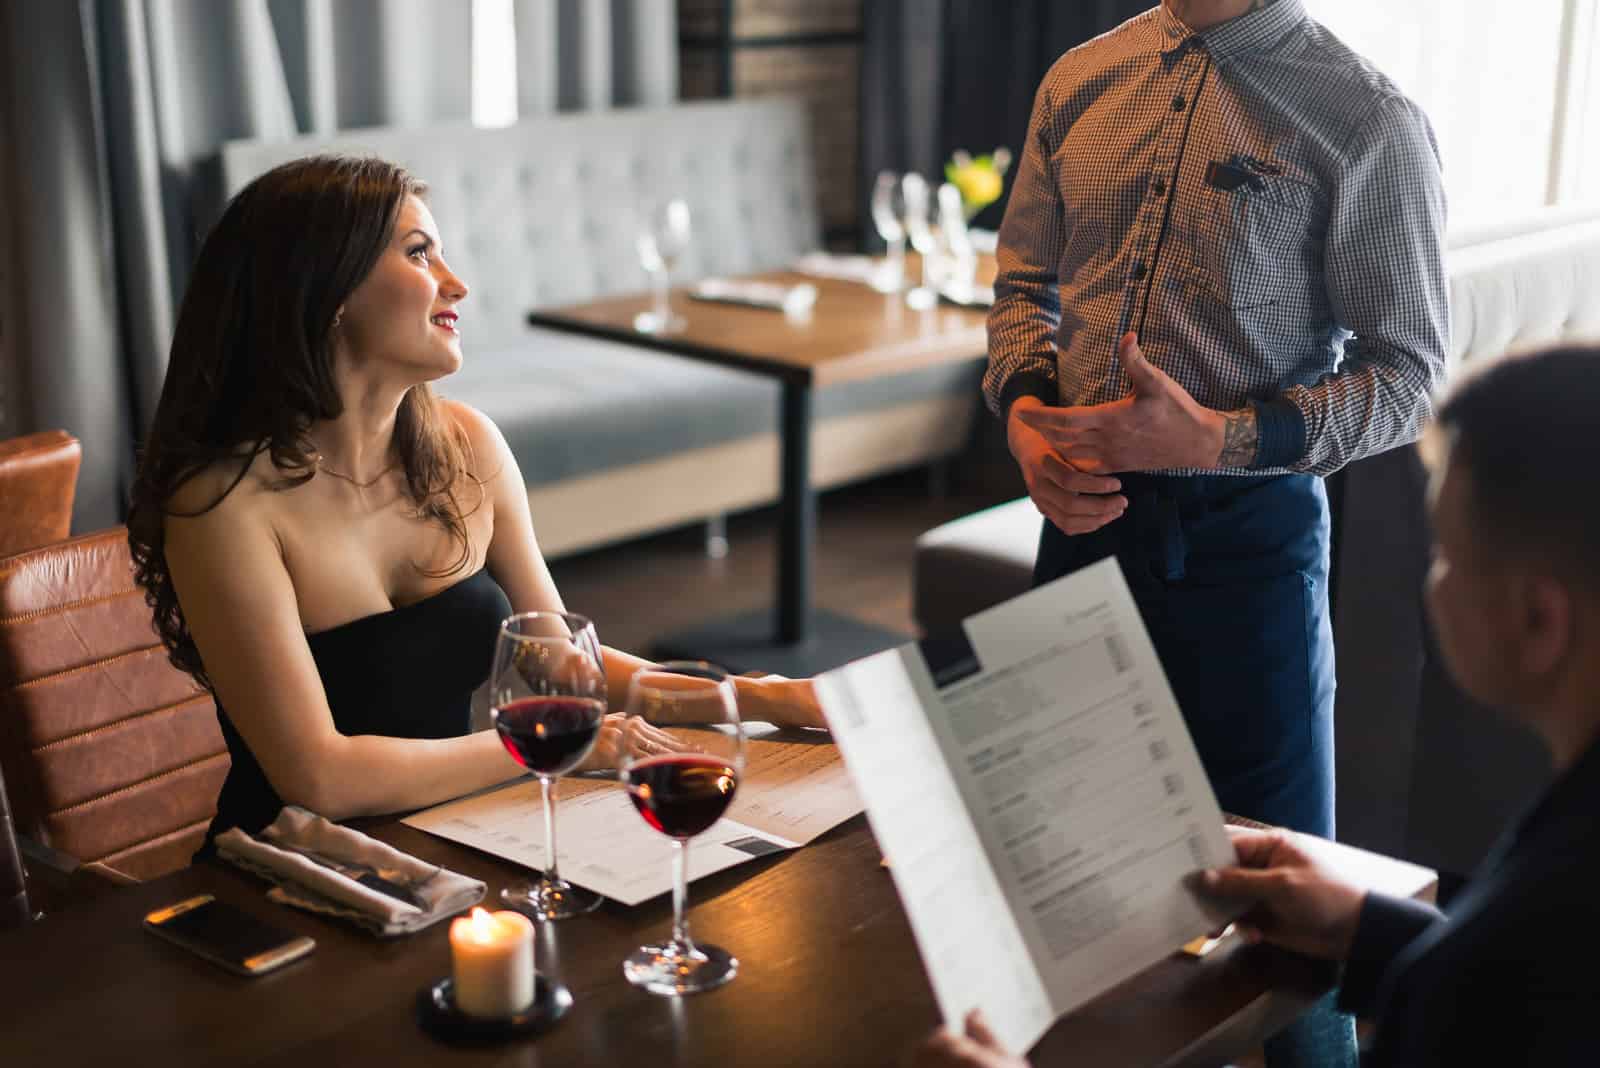 a man and a woman sit at a table and talk to a waiter